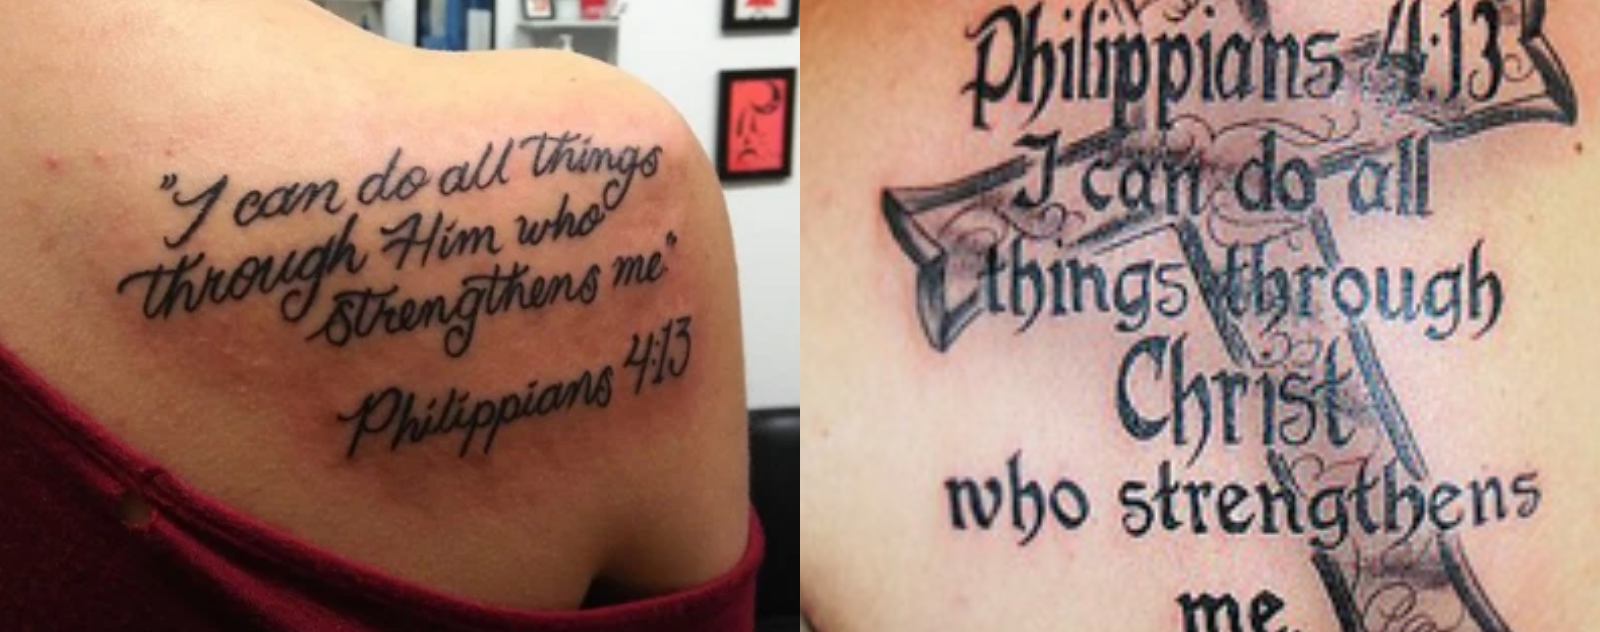 philippians-4-13-tattoo-shoulder-11